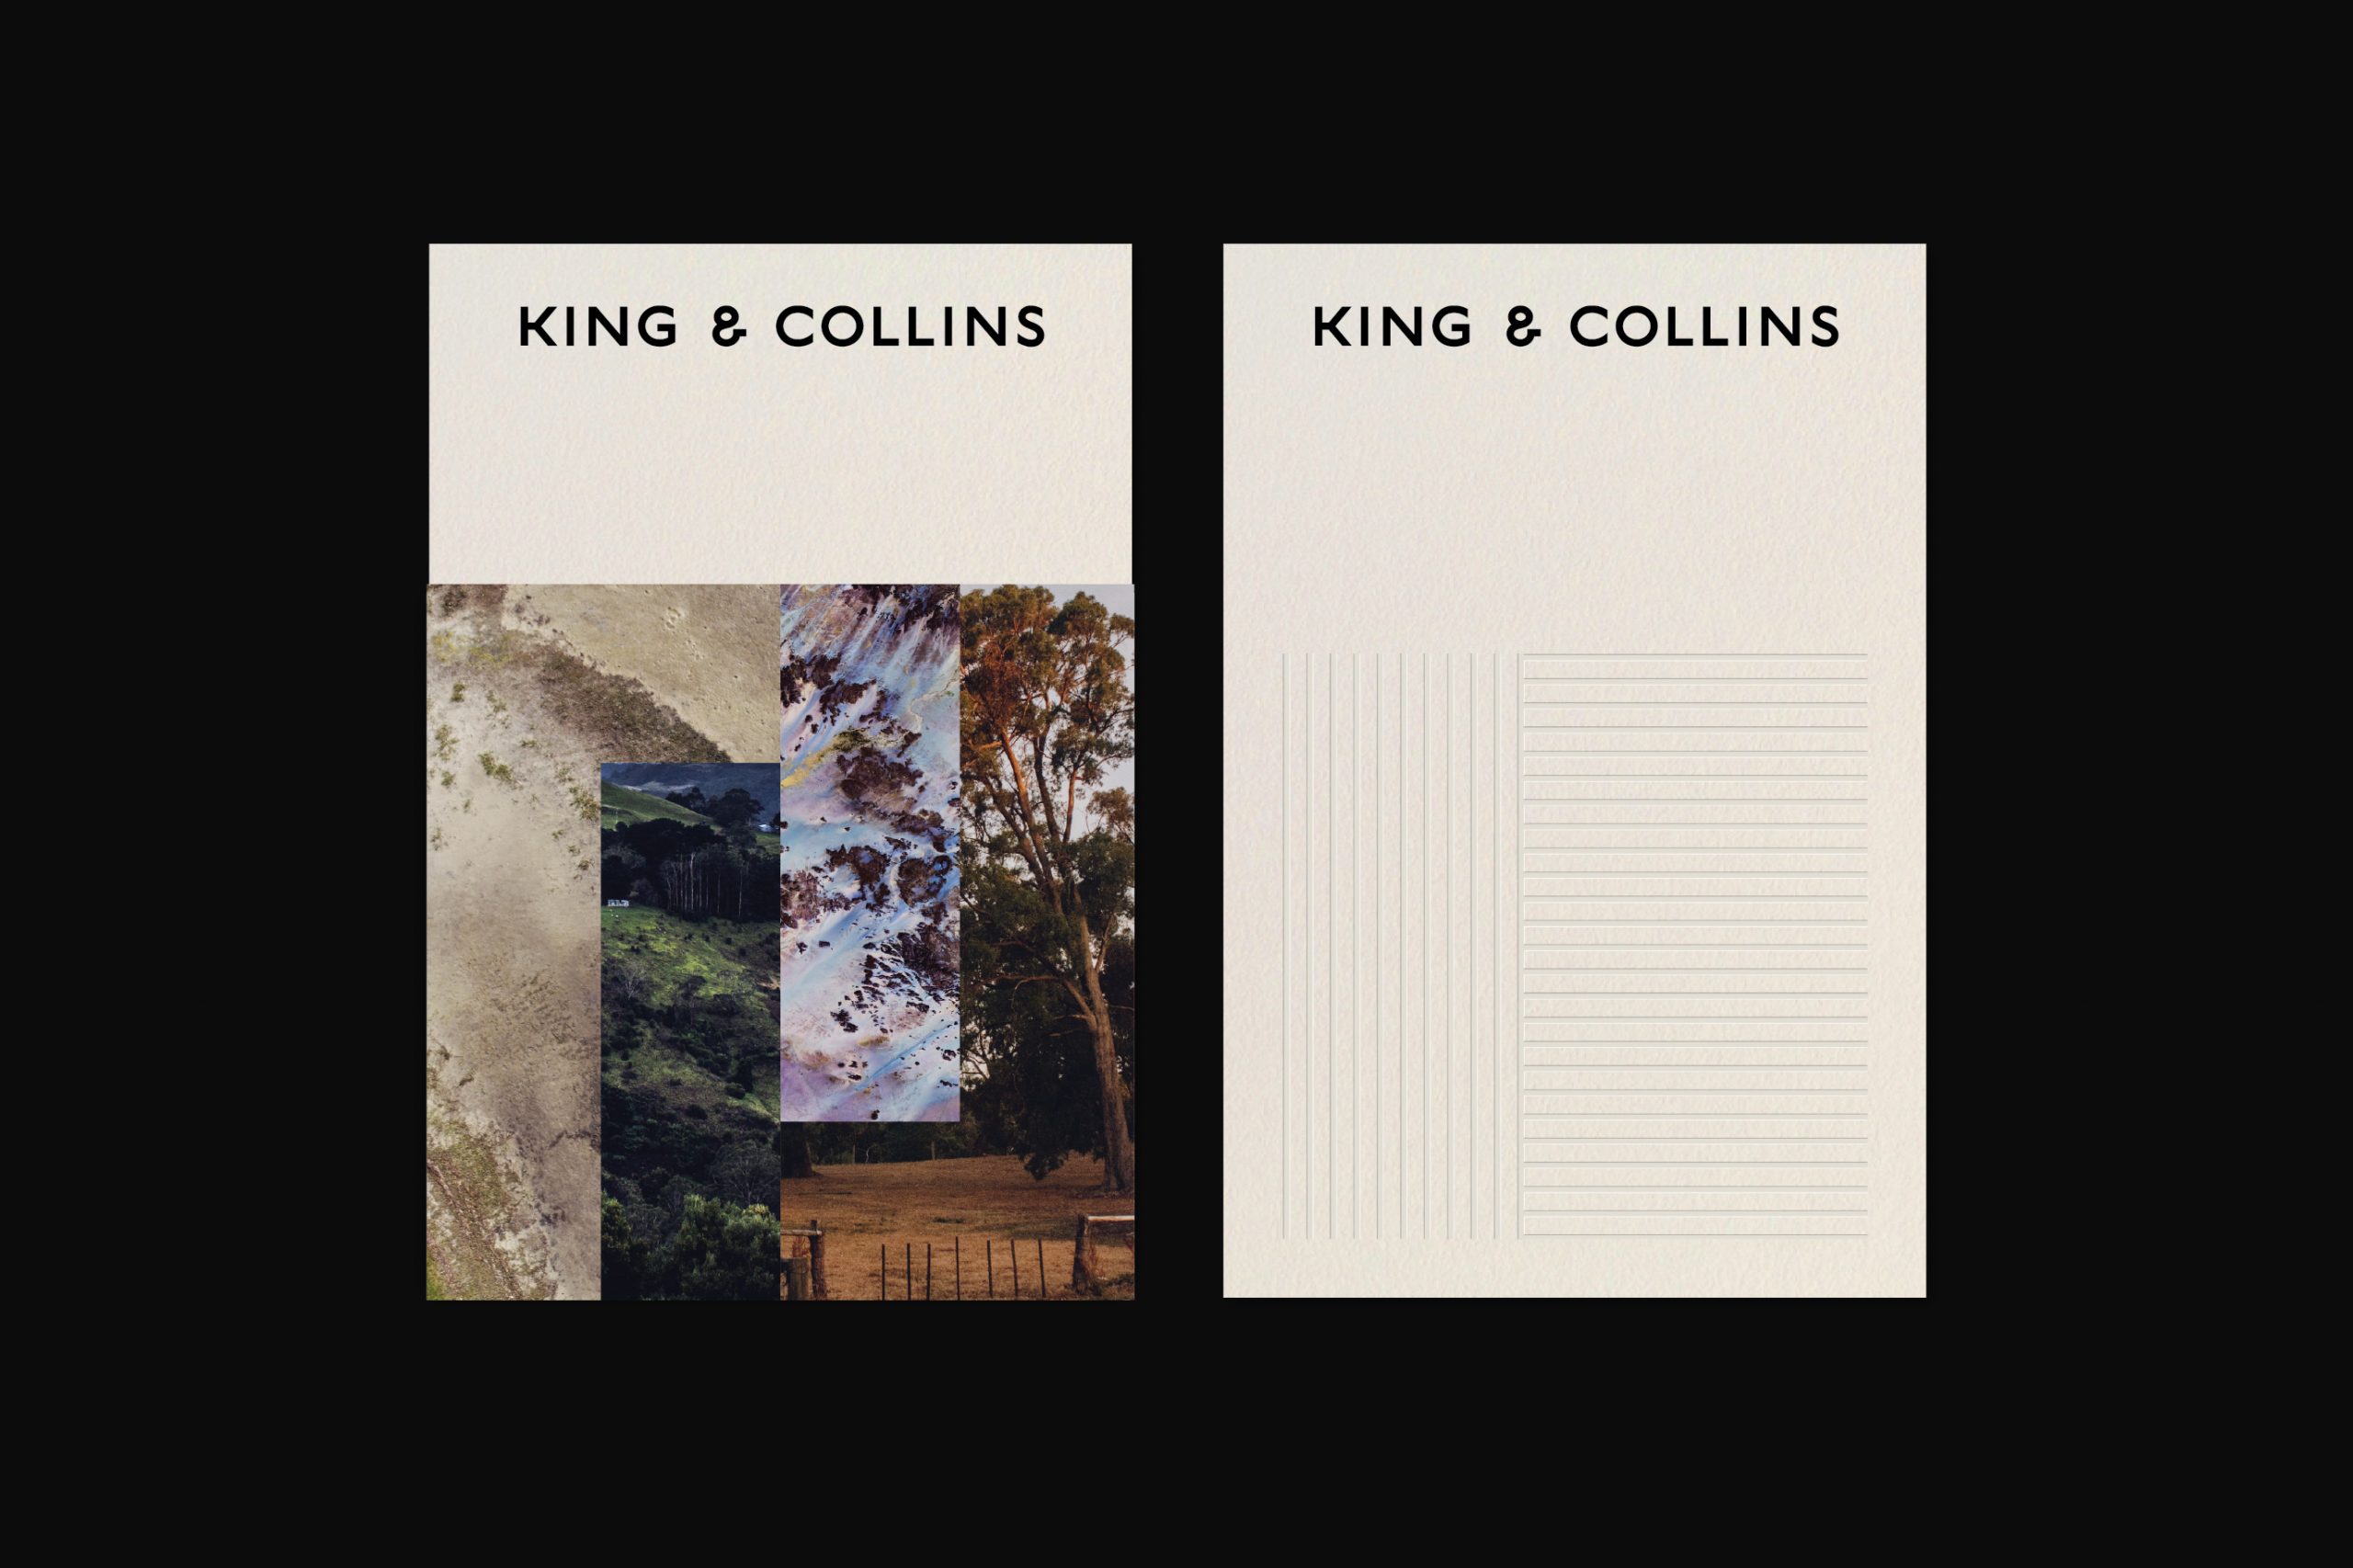 King & Collins律师事务所品牌形象设计